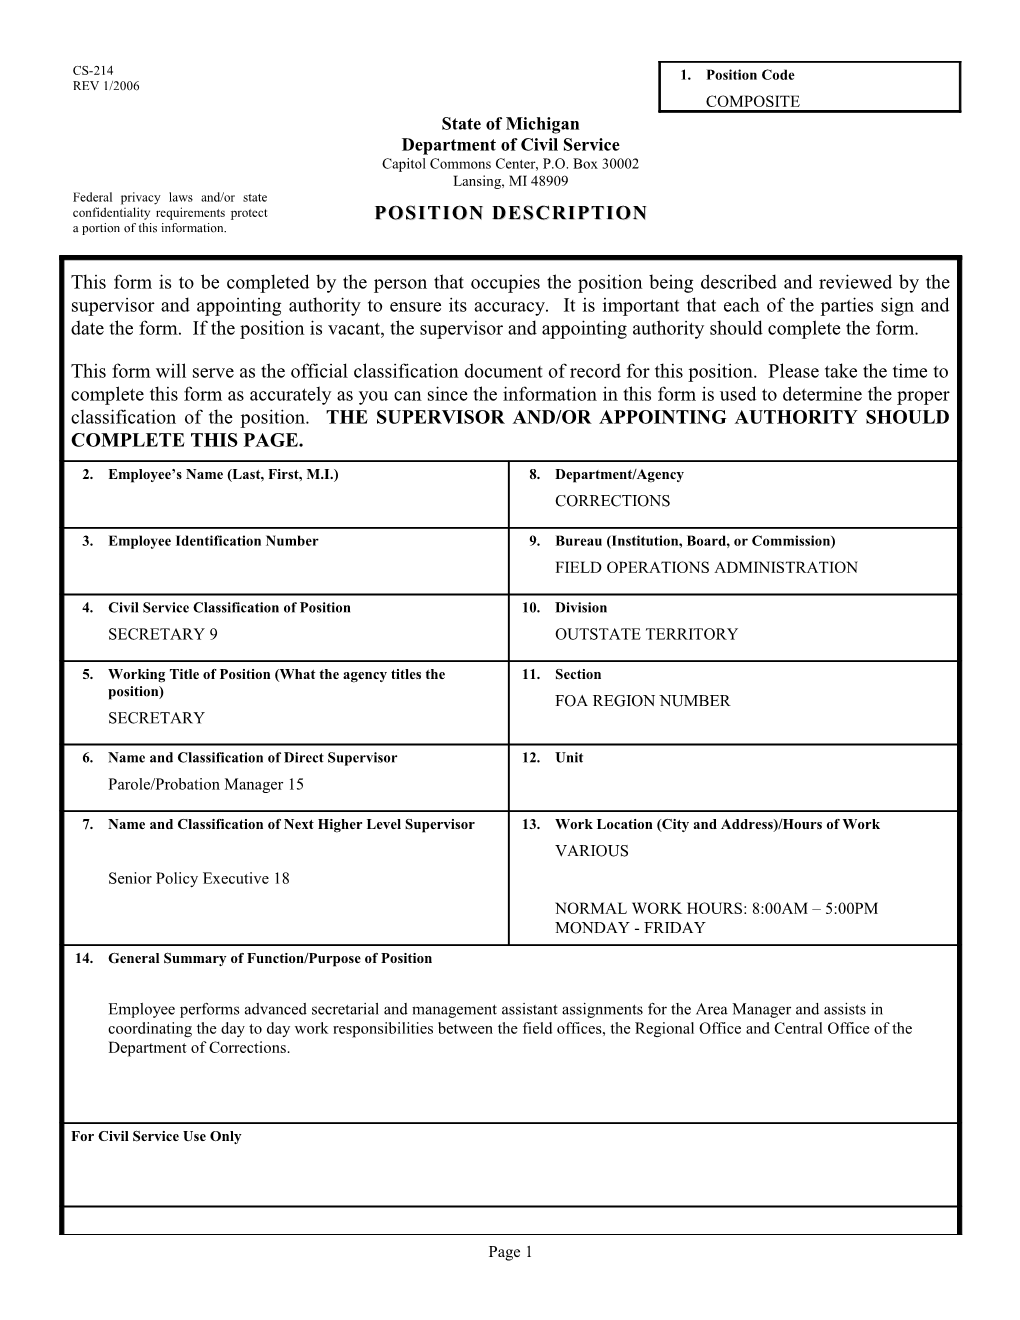 CS-214 Position Description Form s26